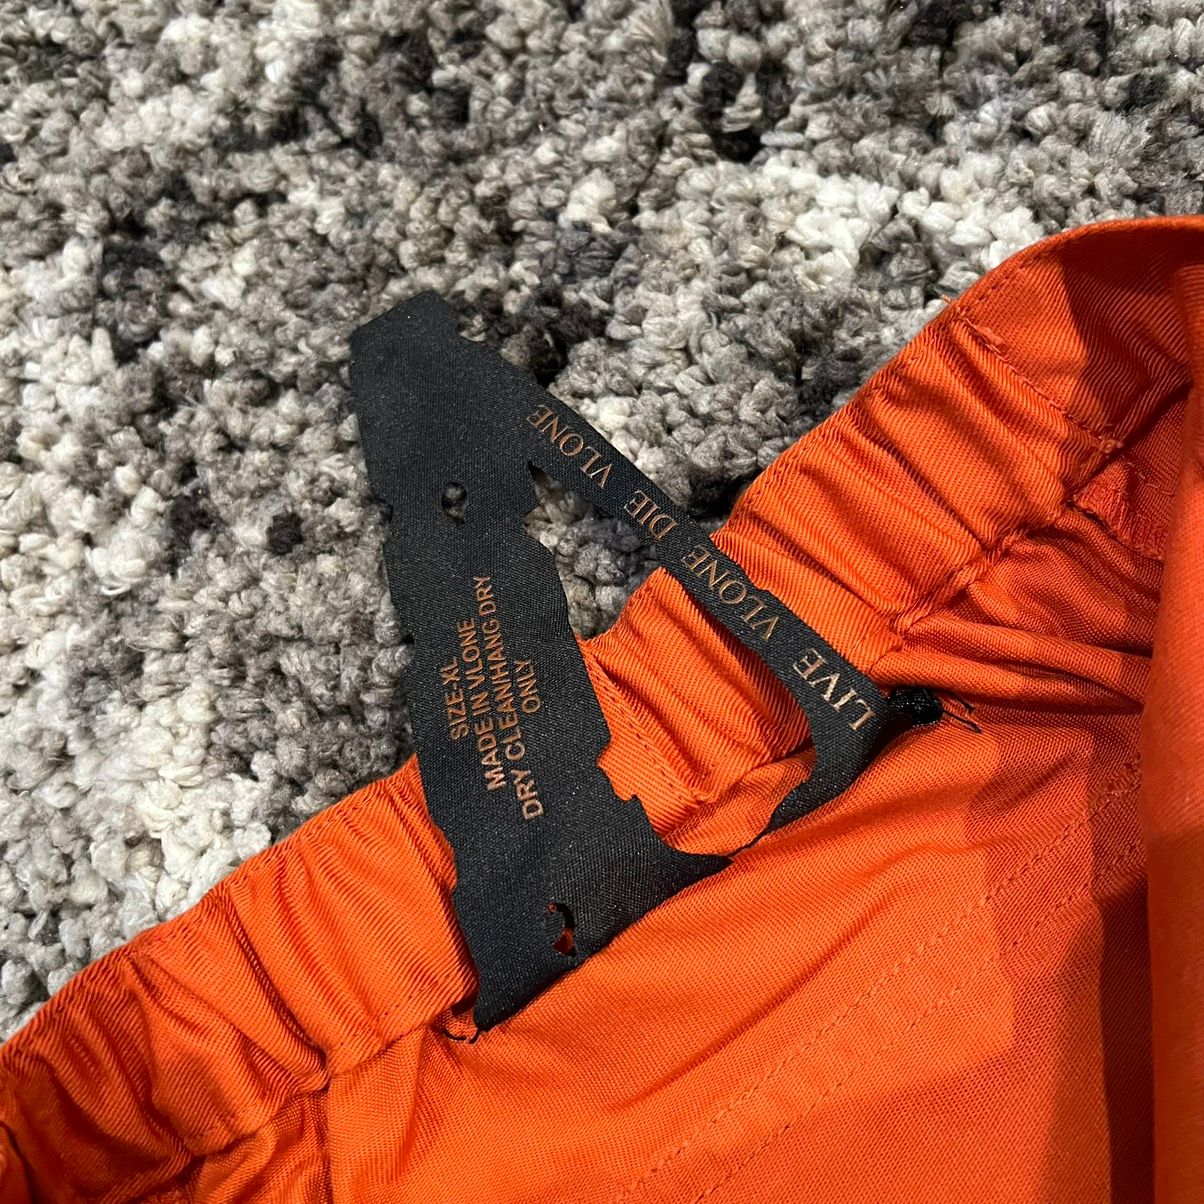 Vlone Vlone Orange With Black Logo Bondage Pants XL Size US 36 / EU 52 - 6 Preview